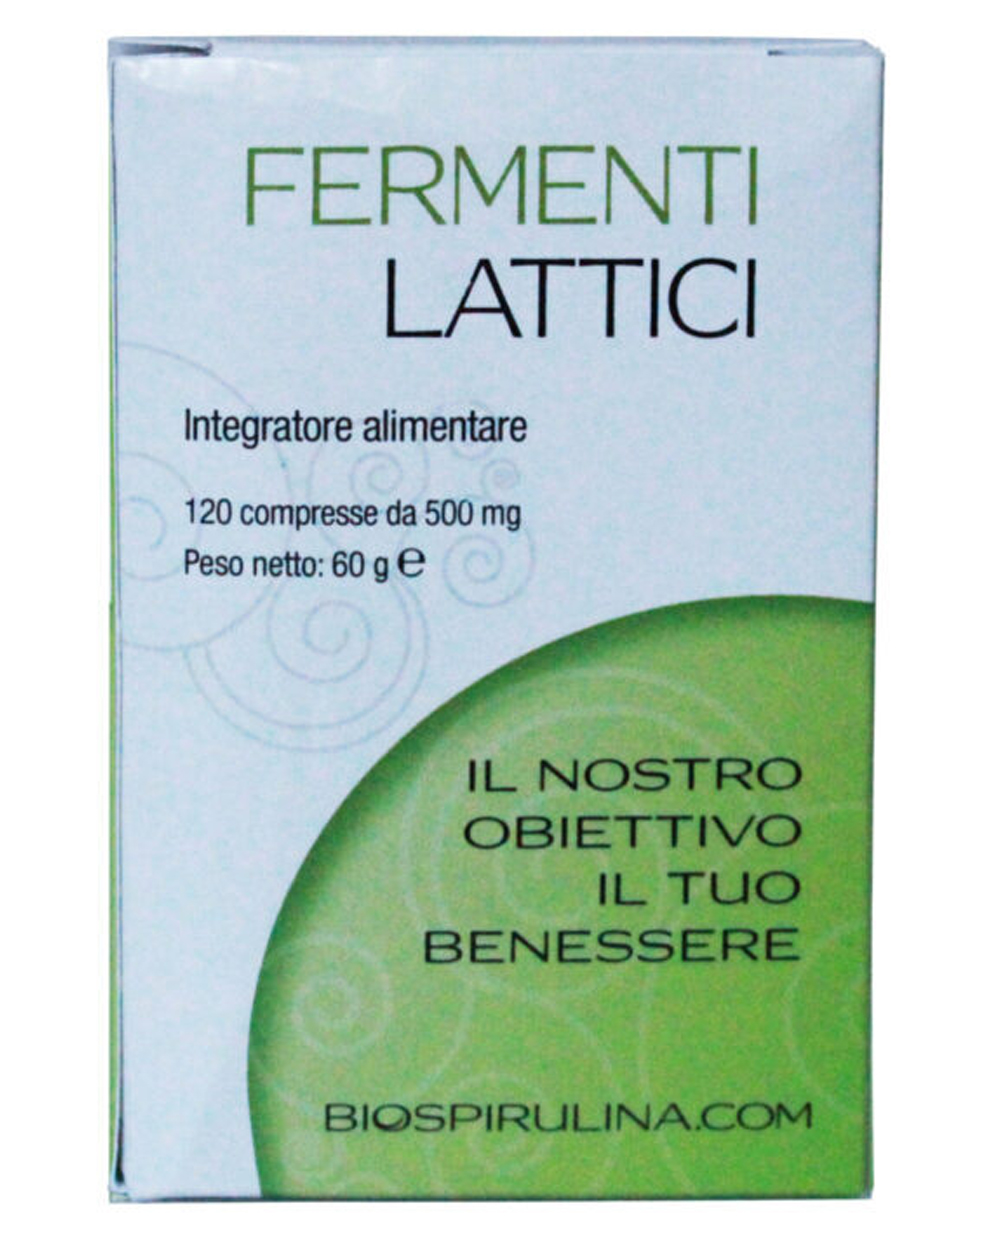 Image of Fermenti Lattici 120 Compresse